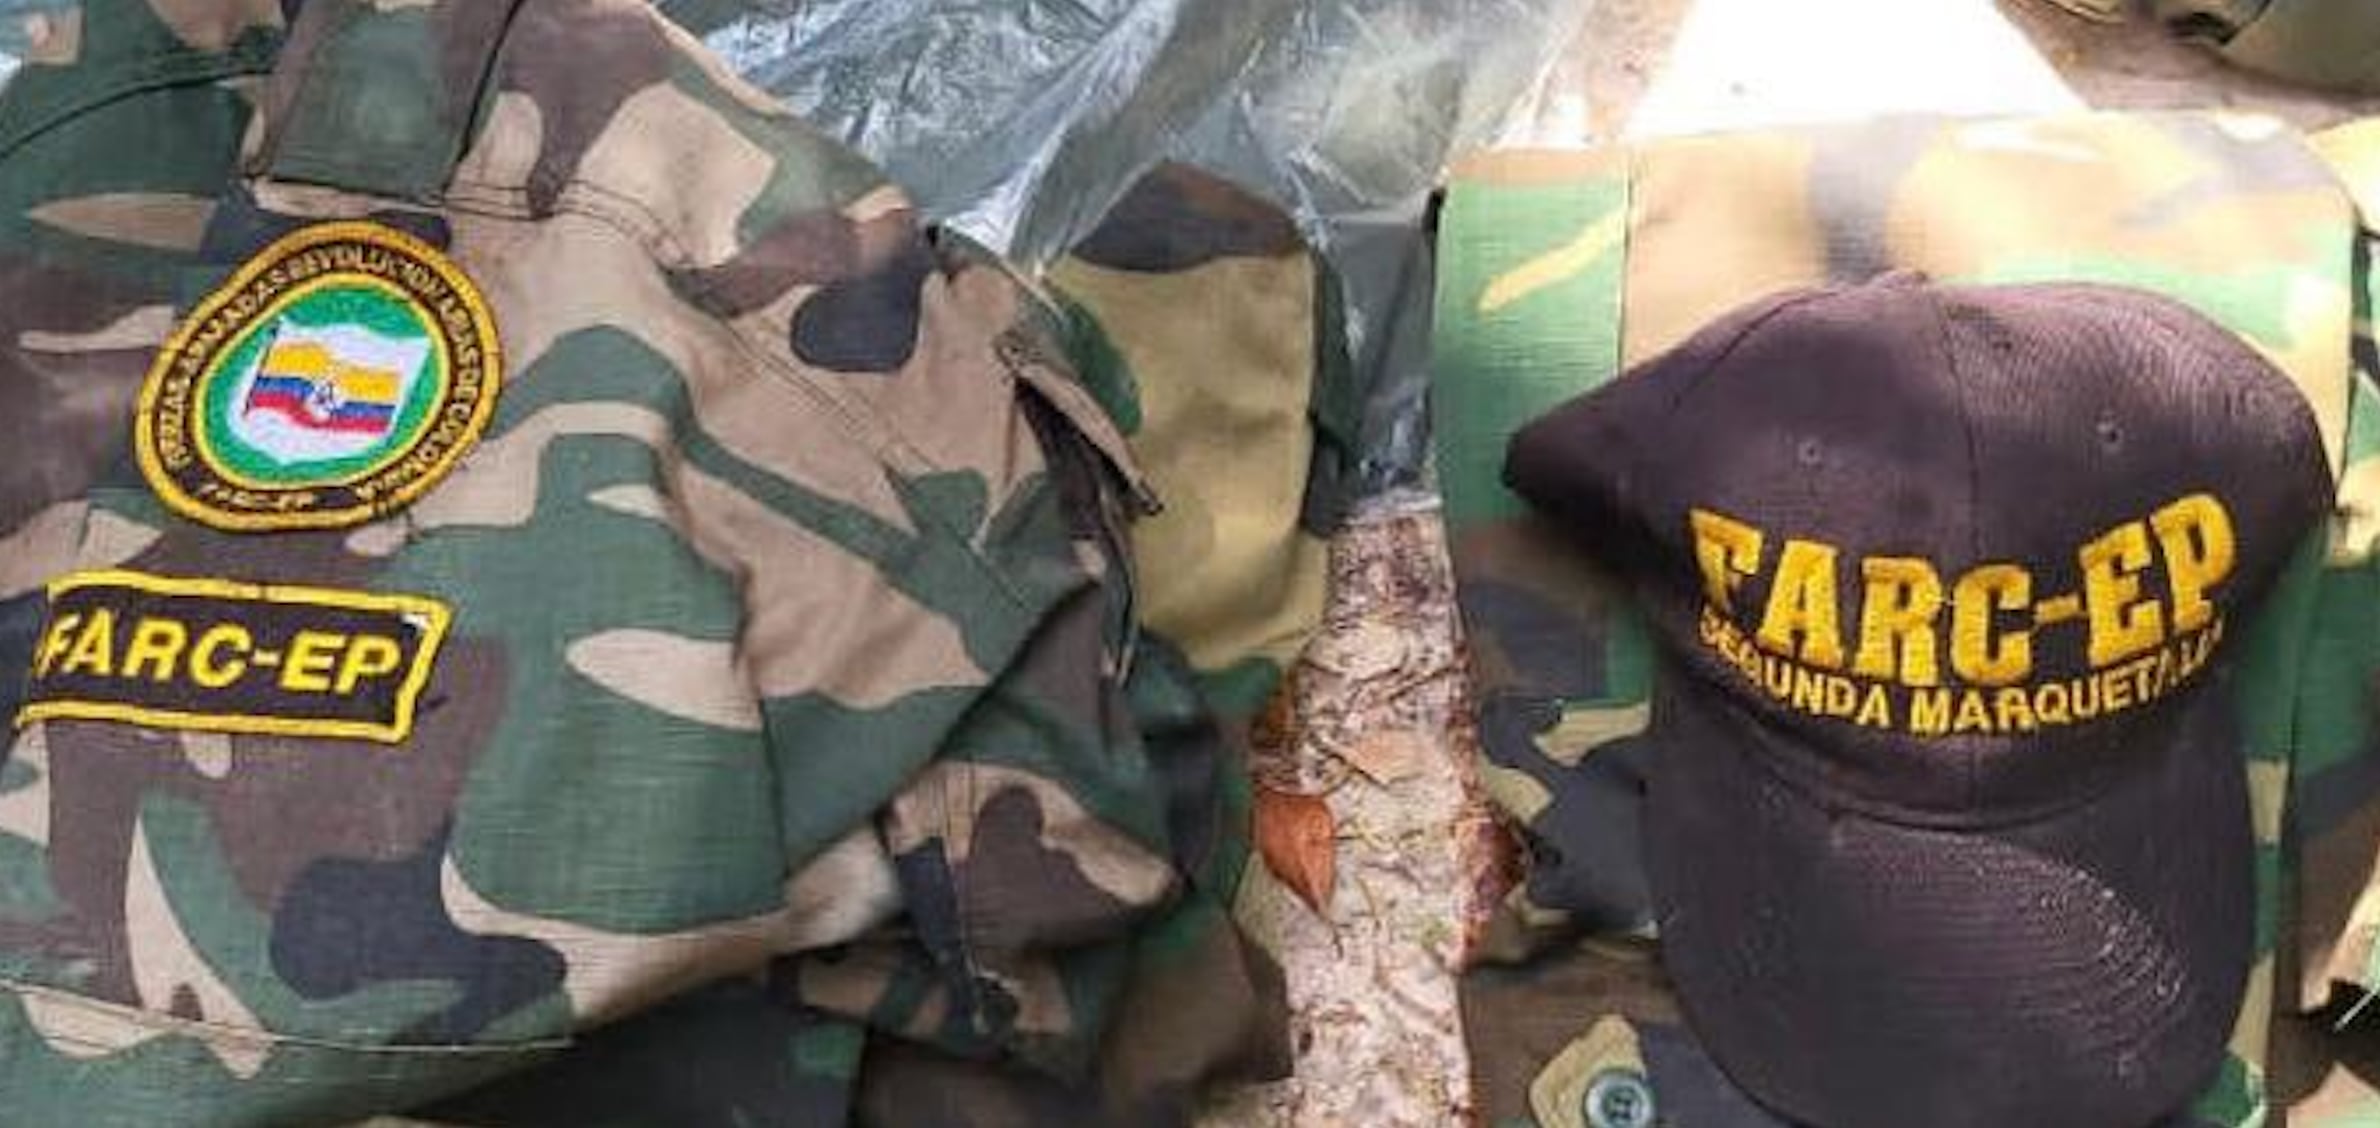 Insignias y uniformes de las FARC Segunda Marquetalia  entre lo encontrado en el Yapacana, según el GJ Hernández Lárez 